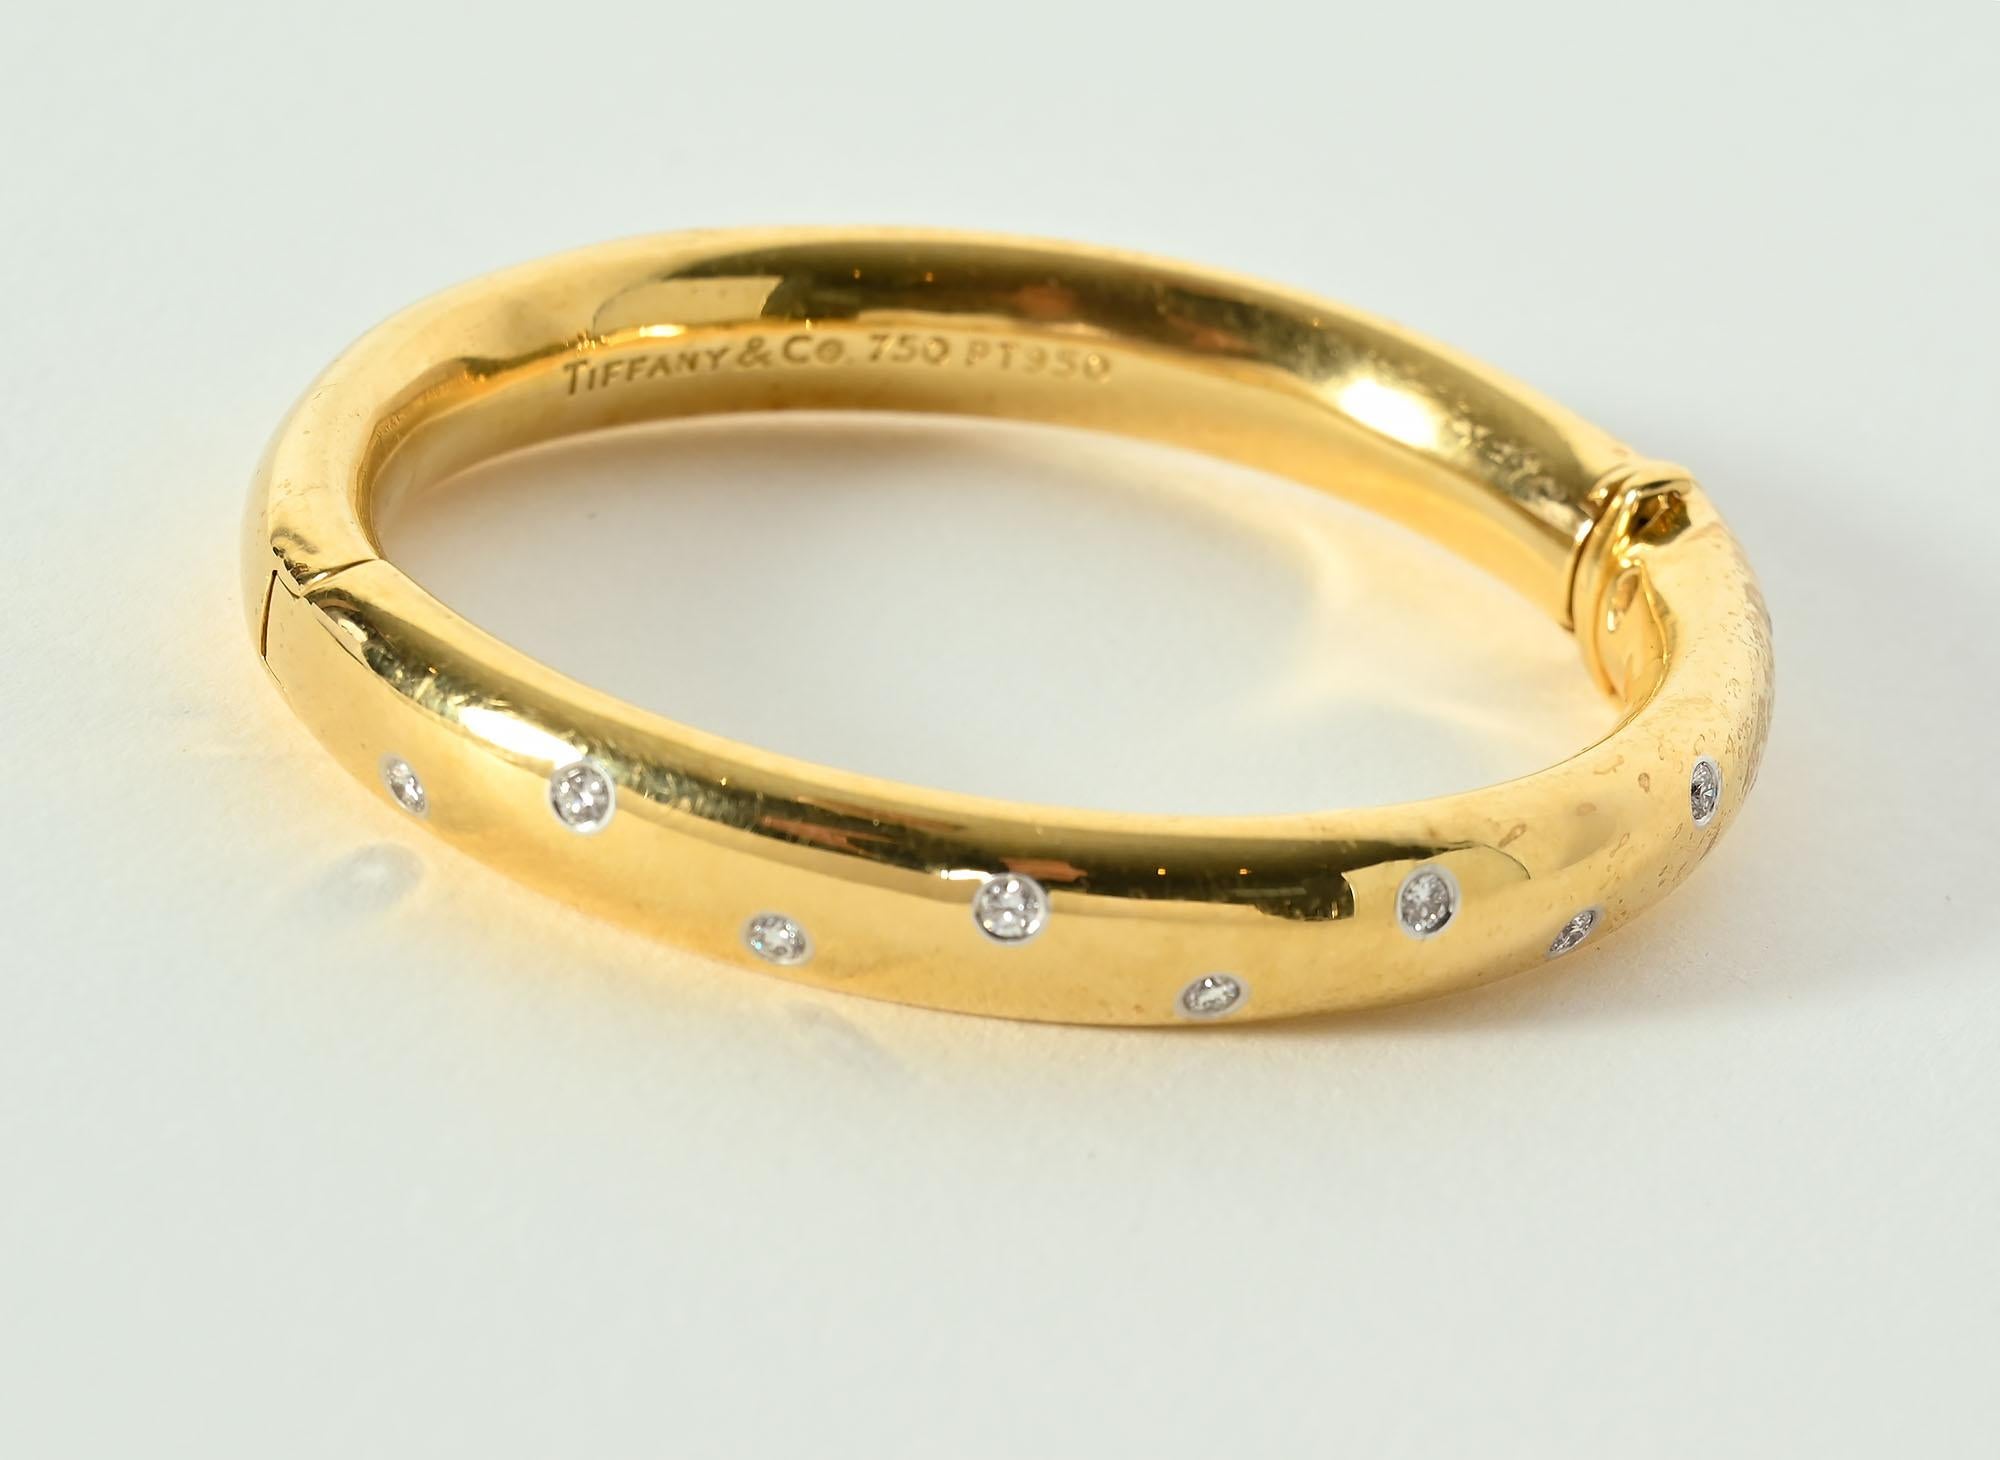 Der Armreif Tiffany Etoile (Stern) funkelt mit 10 Diamanten am Nachthimmel. Die runden Steine im Brillantschliff haben ein Gesamtgewicht von etwa 0,40 Karat.
Diese beliebte Armspange wird nicht mehr hergestellt. Das Armband hat eine Schließe mit